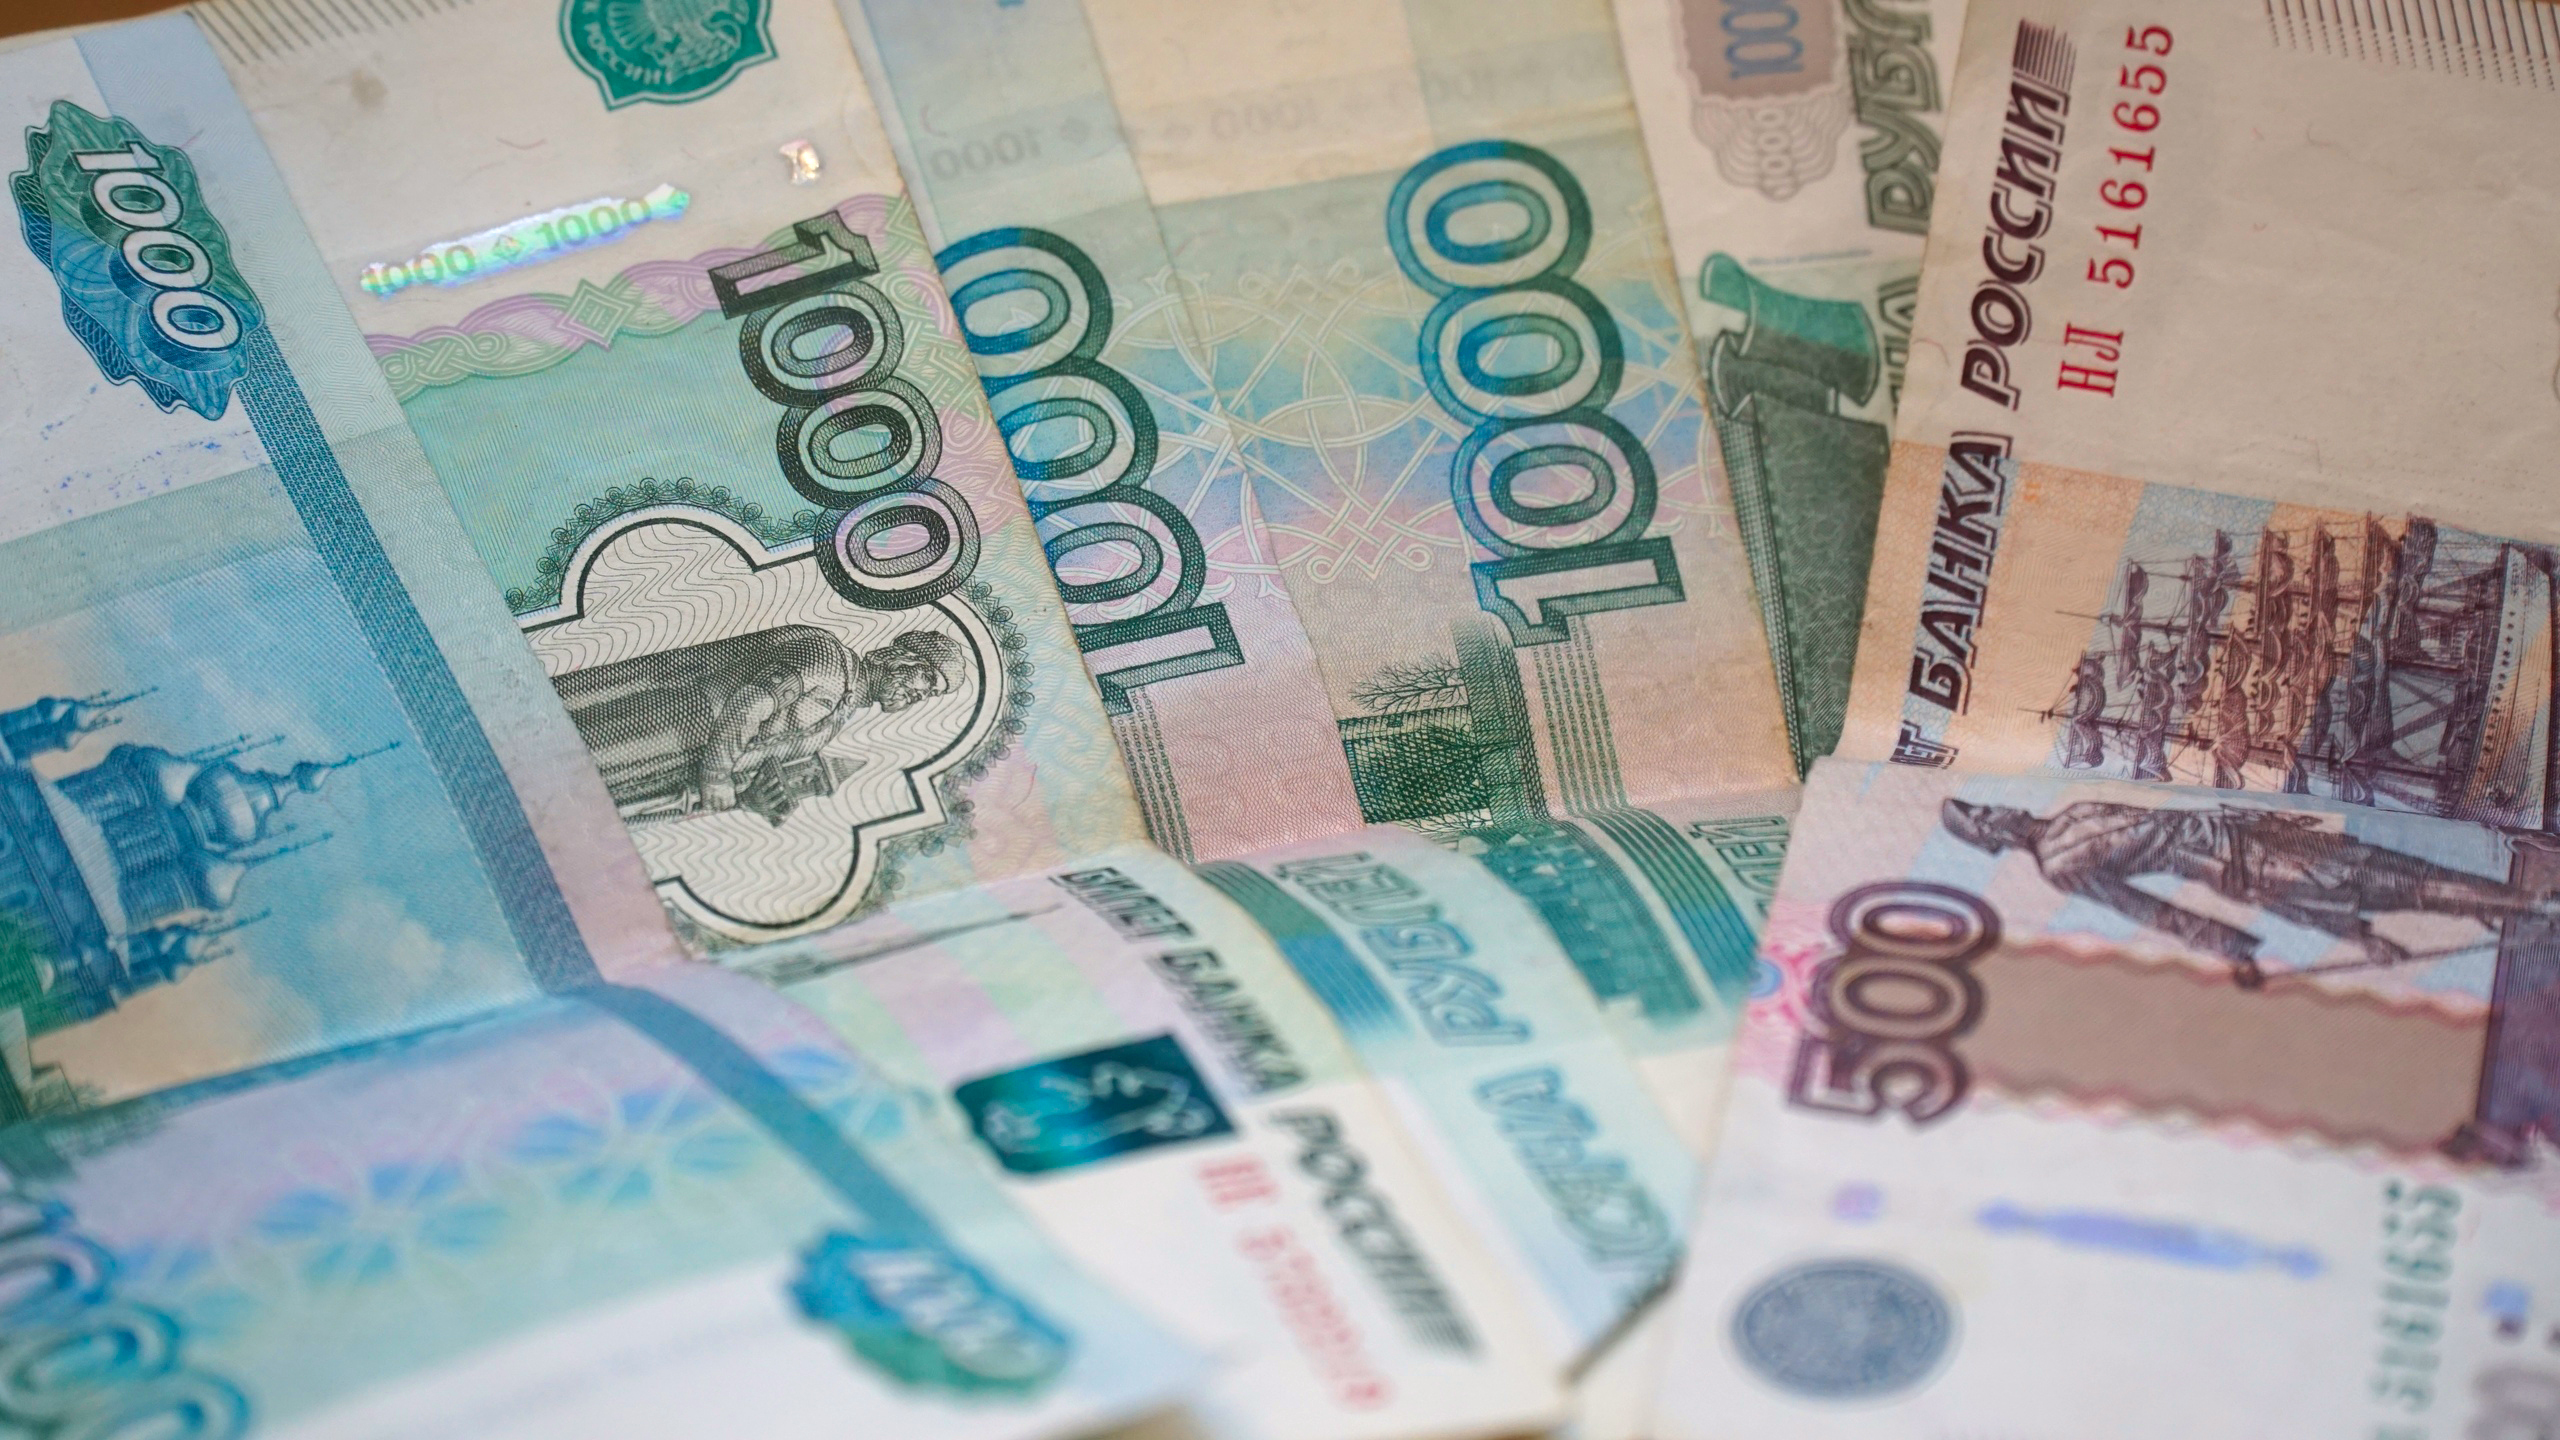 Омич под видом девушки пригласил мужчину в несуществующую кальянную за 3 тыс рублей